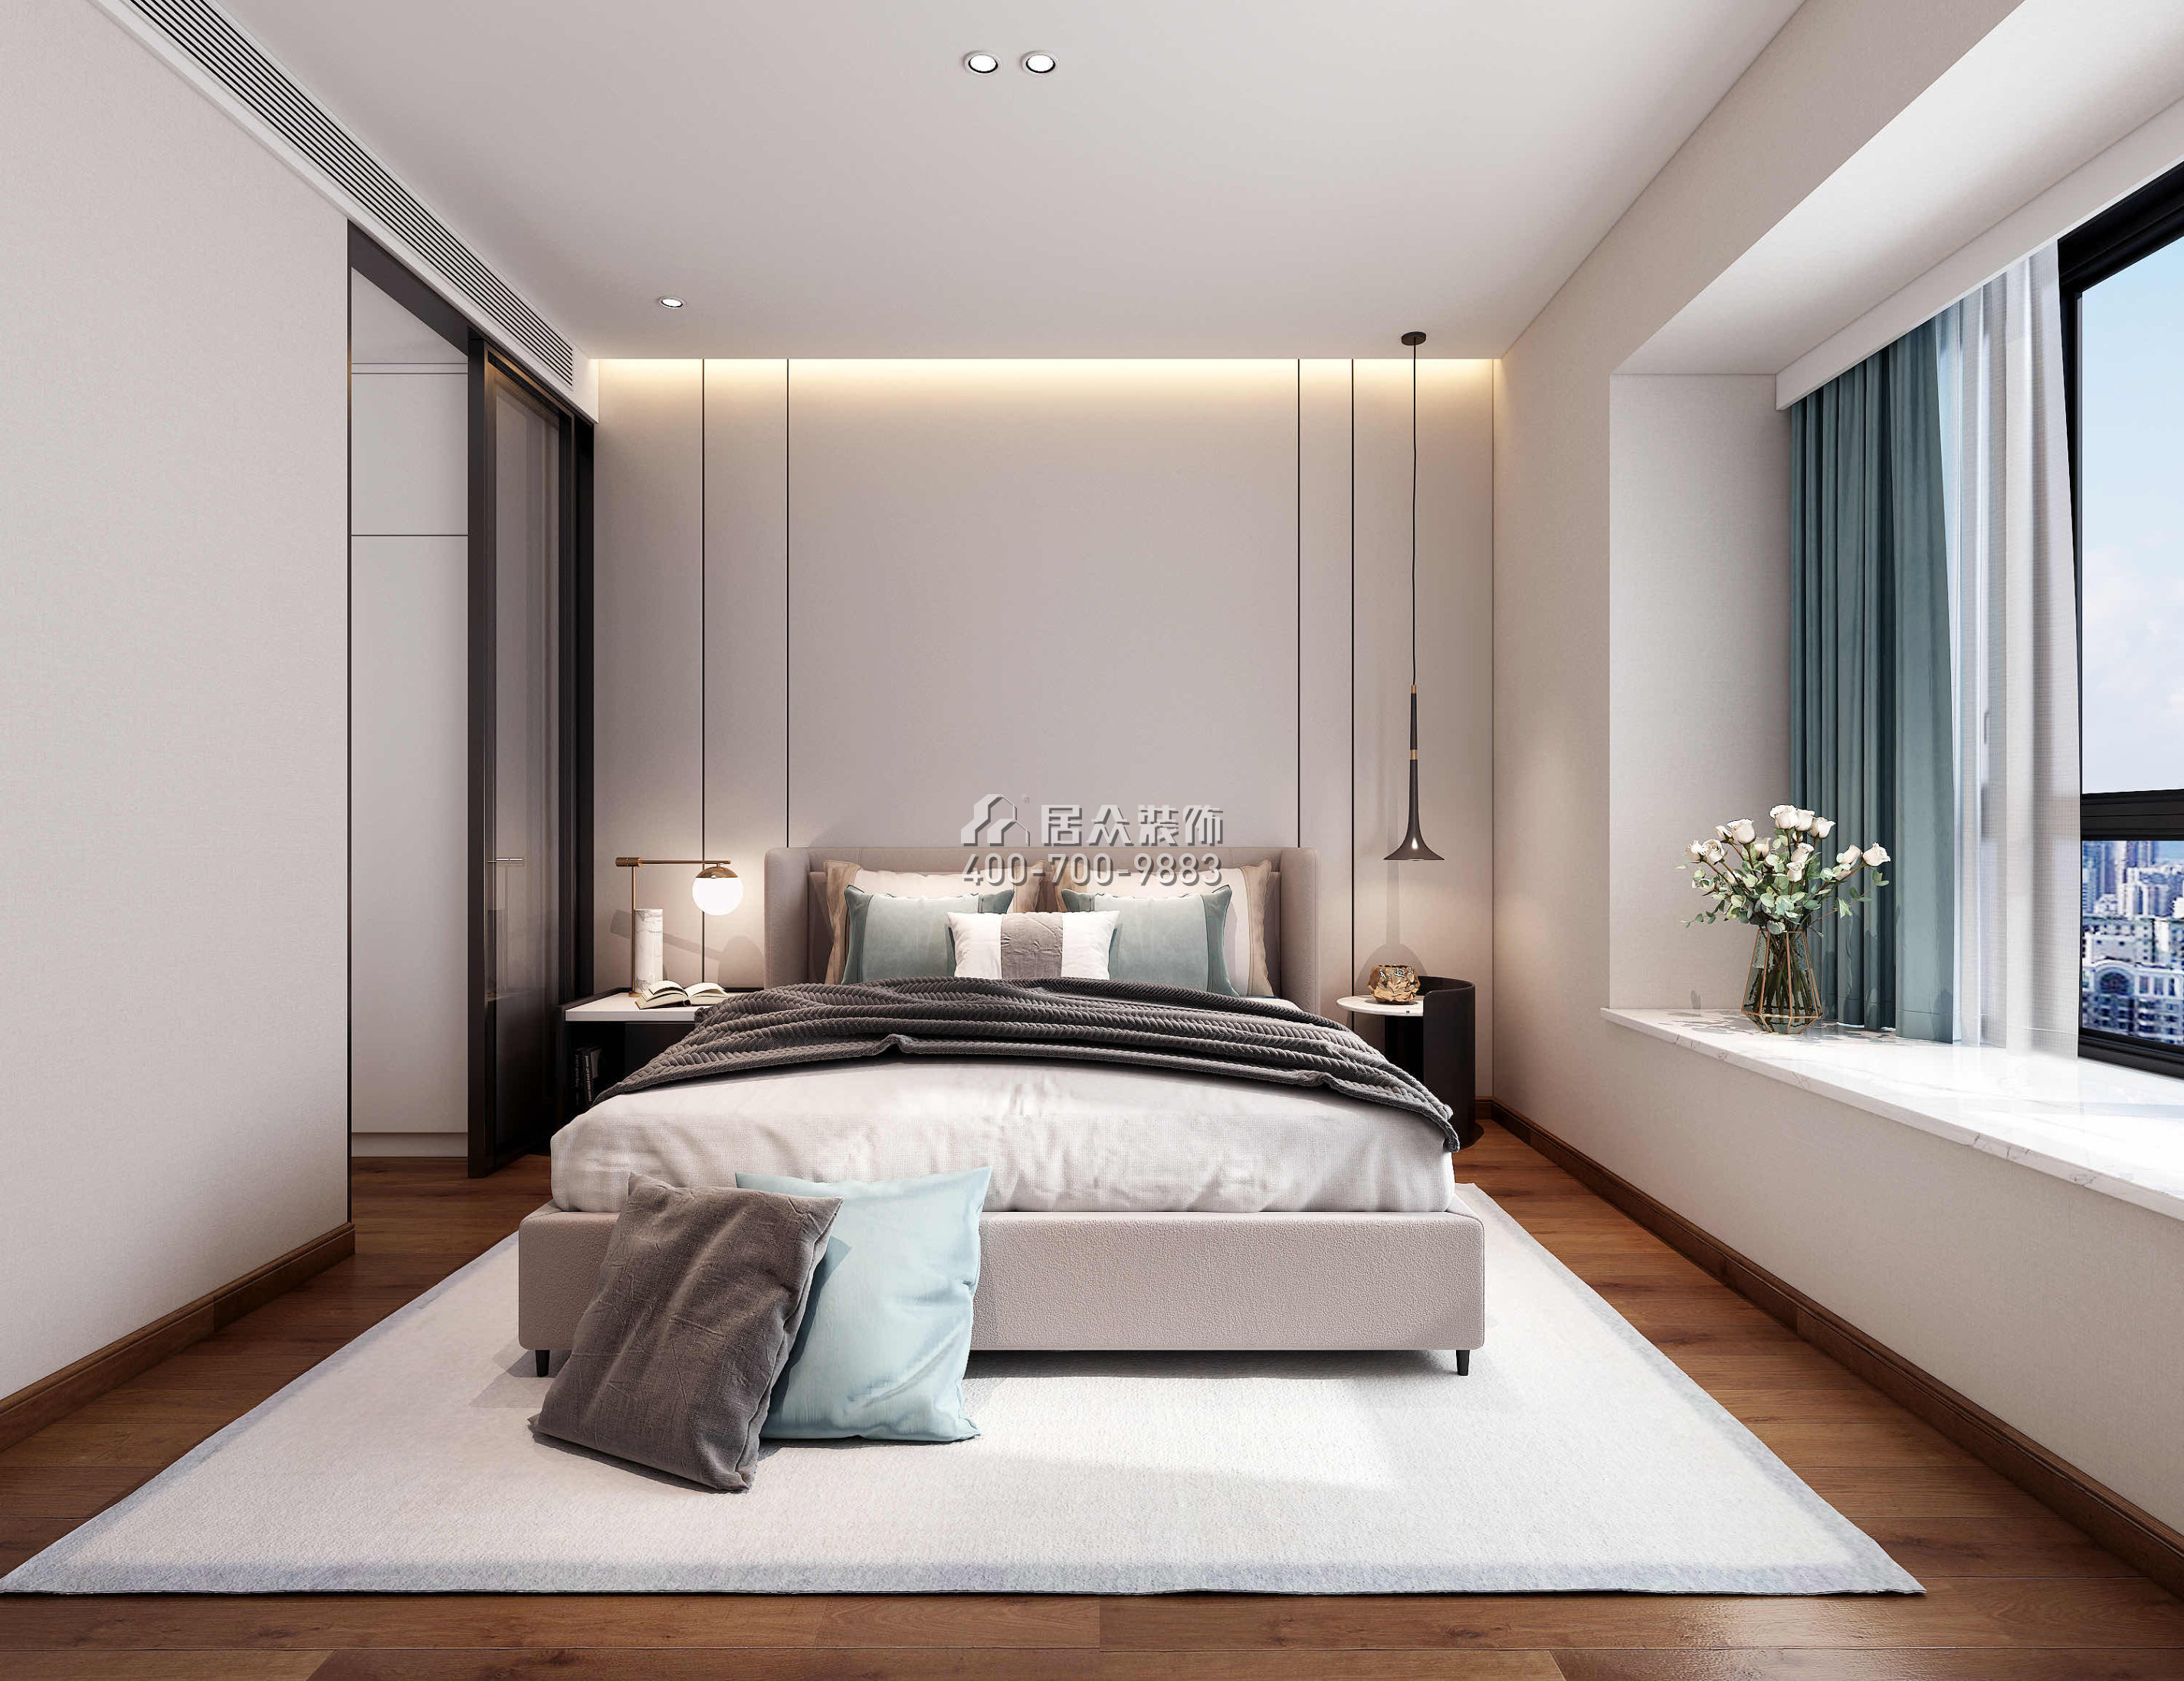 中森公園華府124平方米現代簡約風格平層戶型臥室裝修效果圖